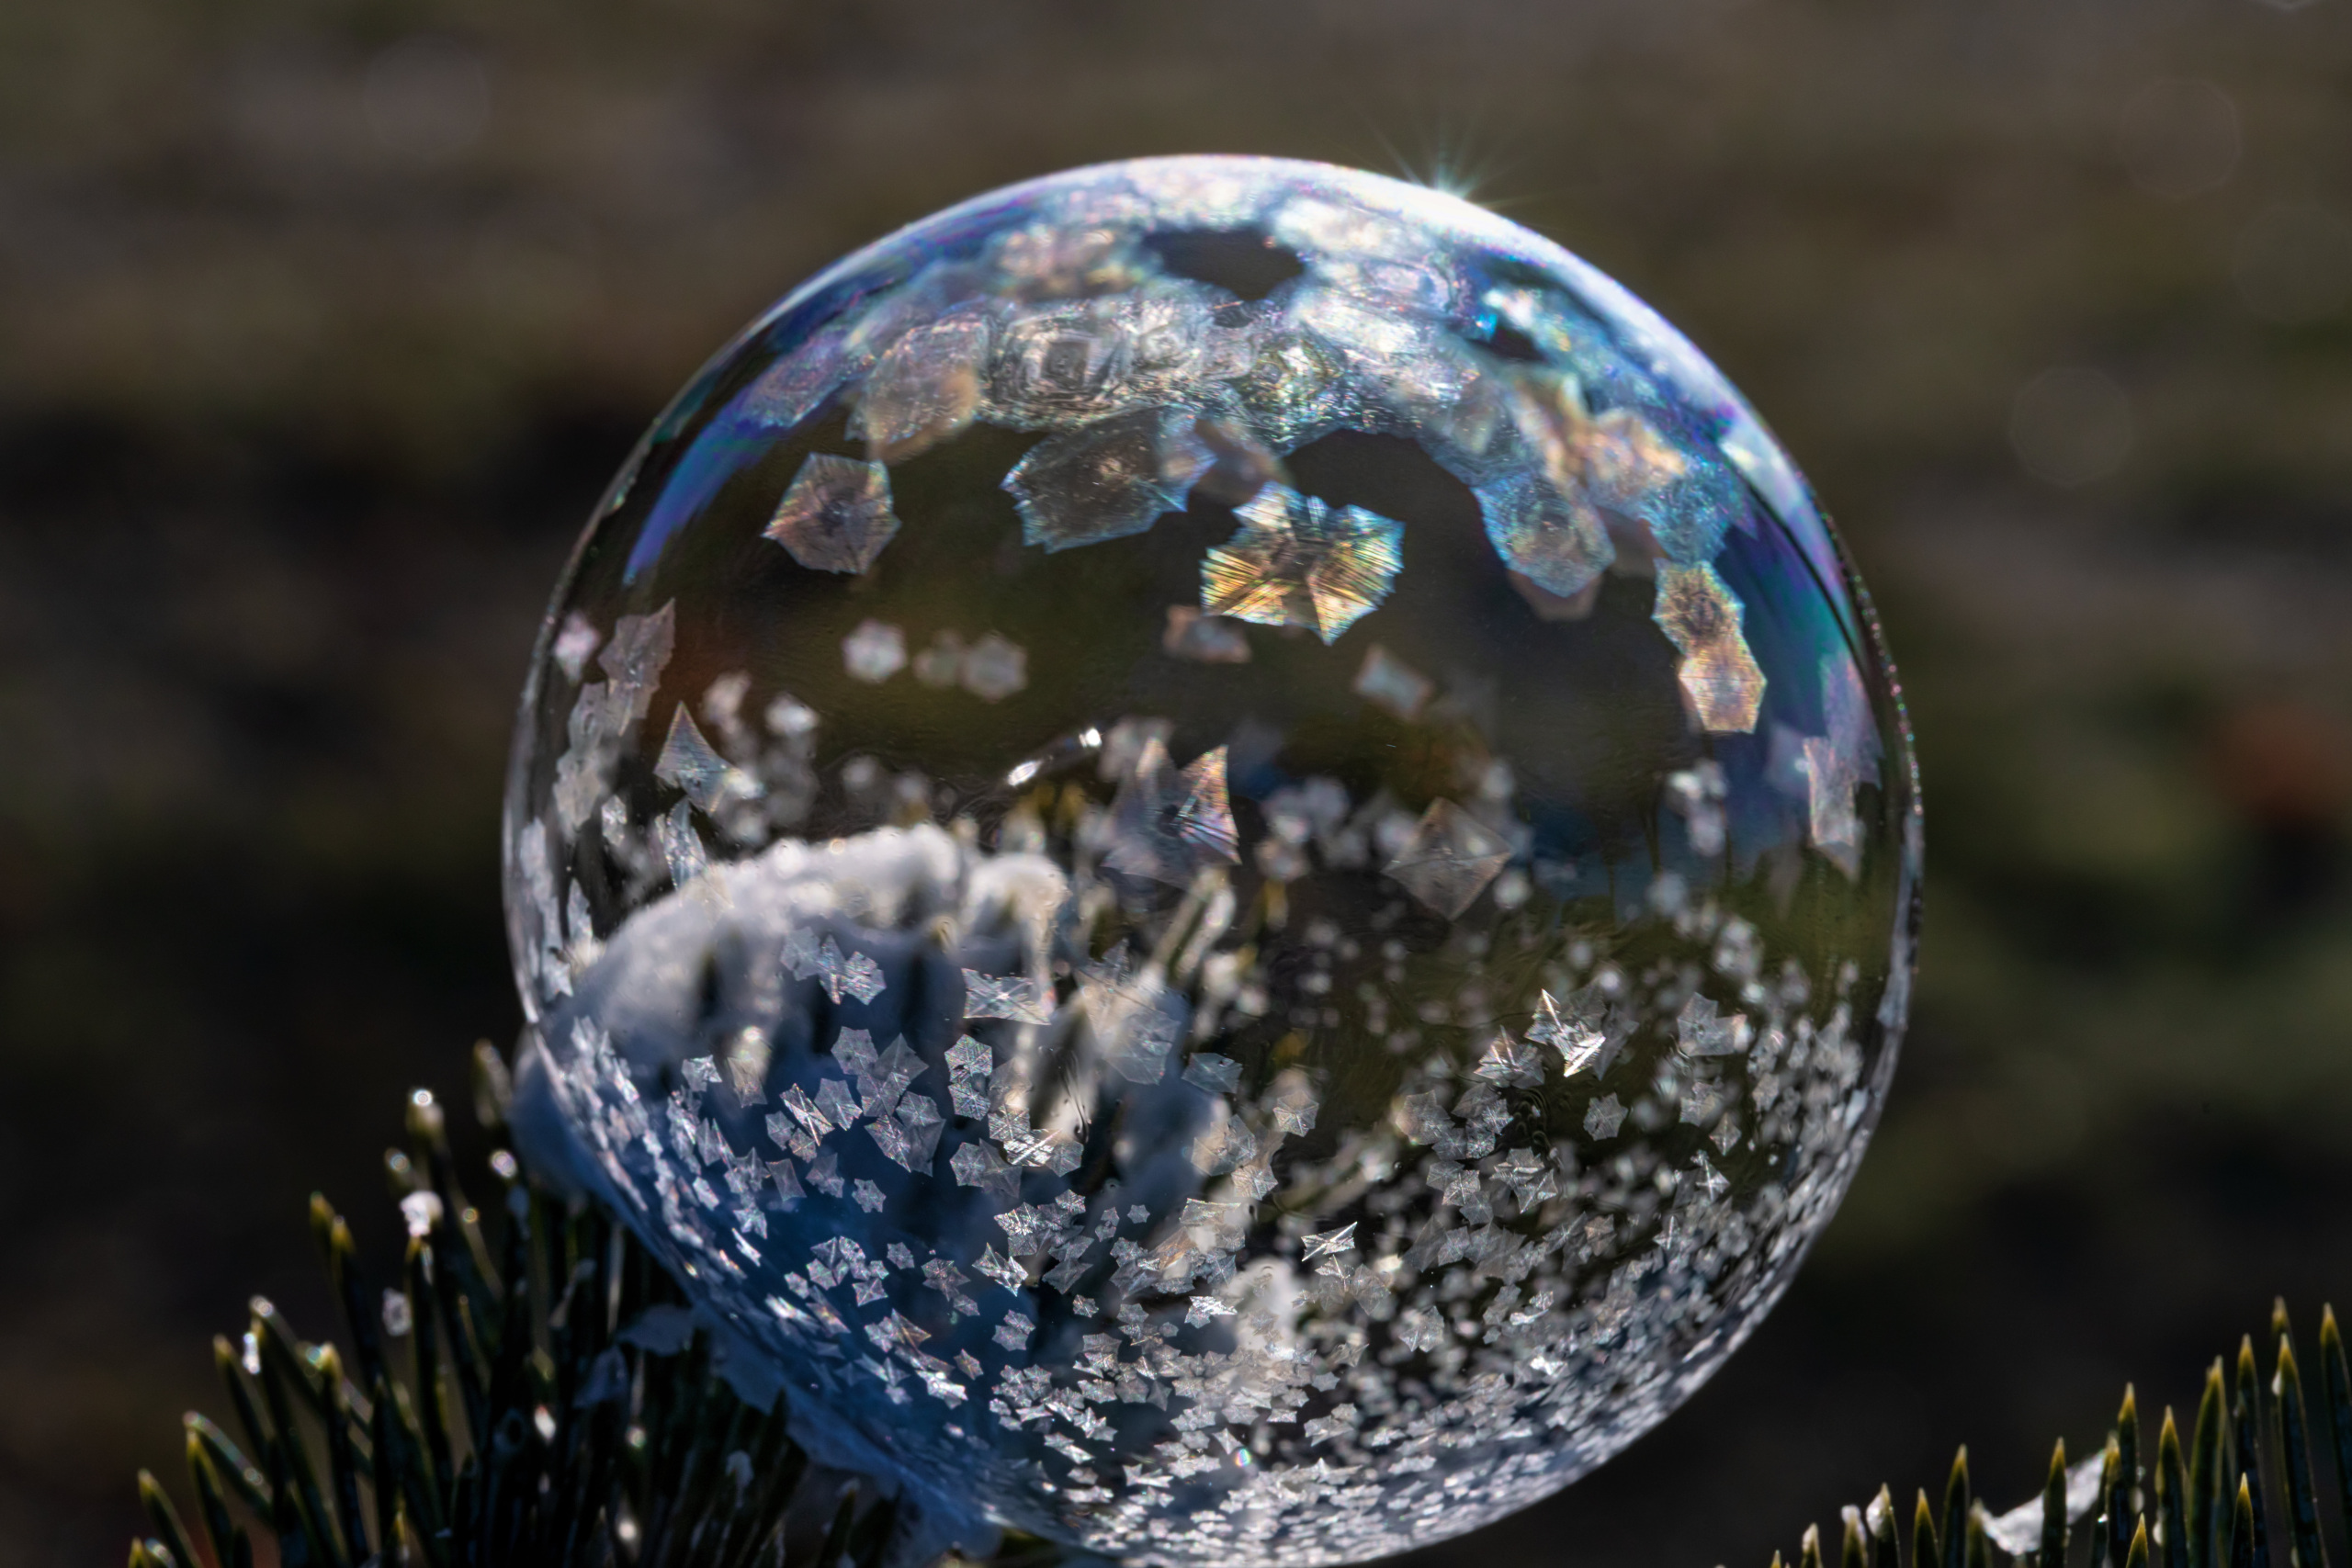 frozen bubble level 125